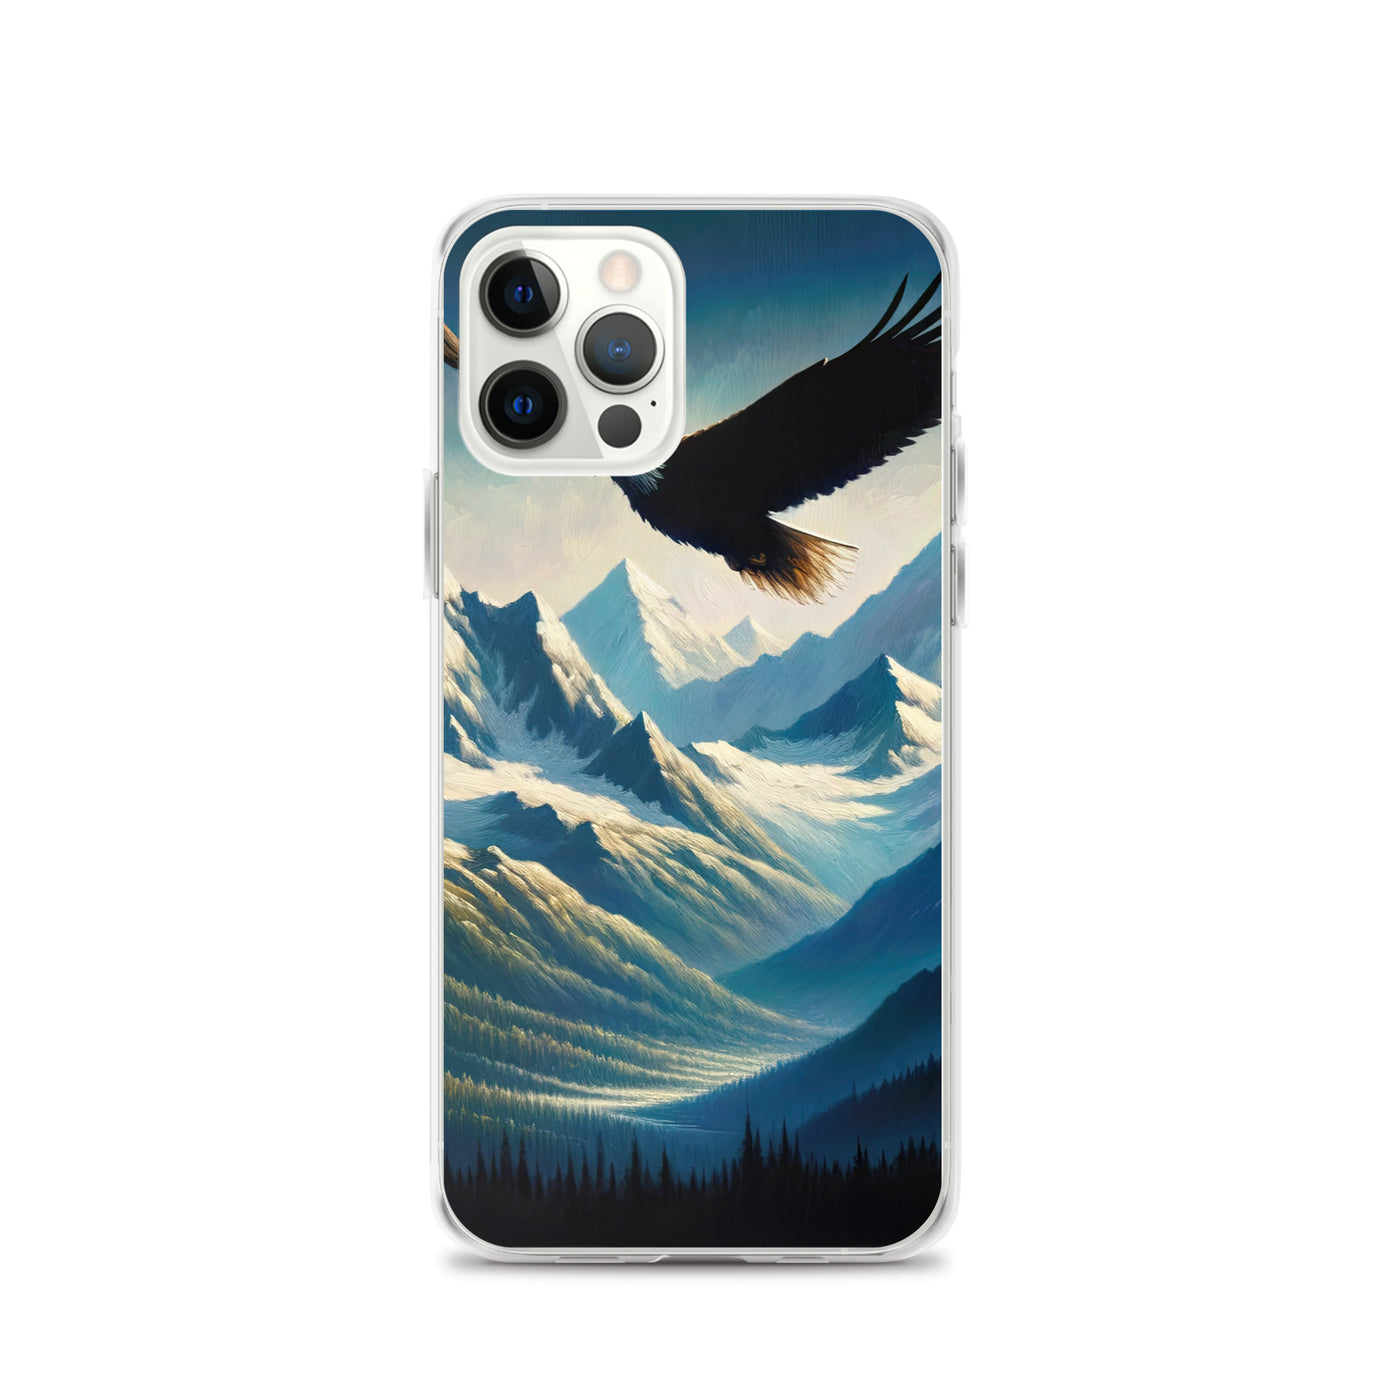 Ölgemälde eines Adlers vor schneebedeckten Bergsilhouetten - iPhone Schutzhülle (durchsichtig) berge xxx yyy zzz iPhone 12 Pro